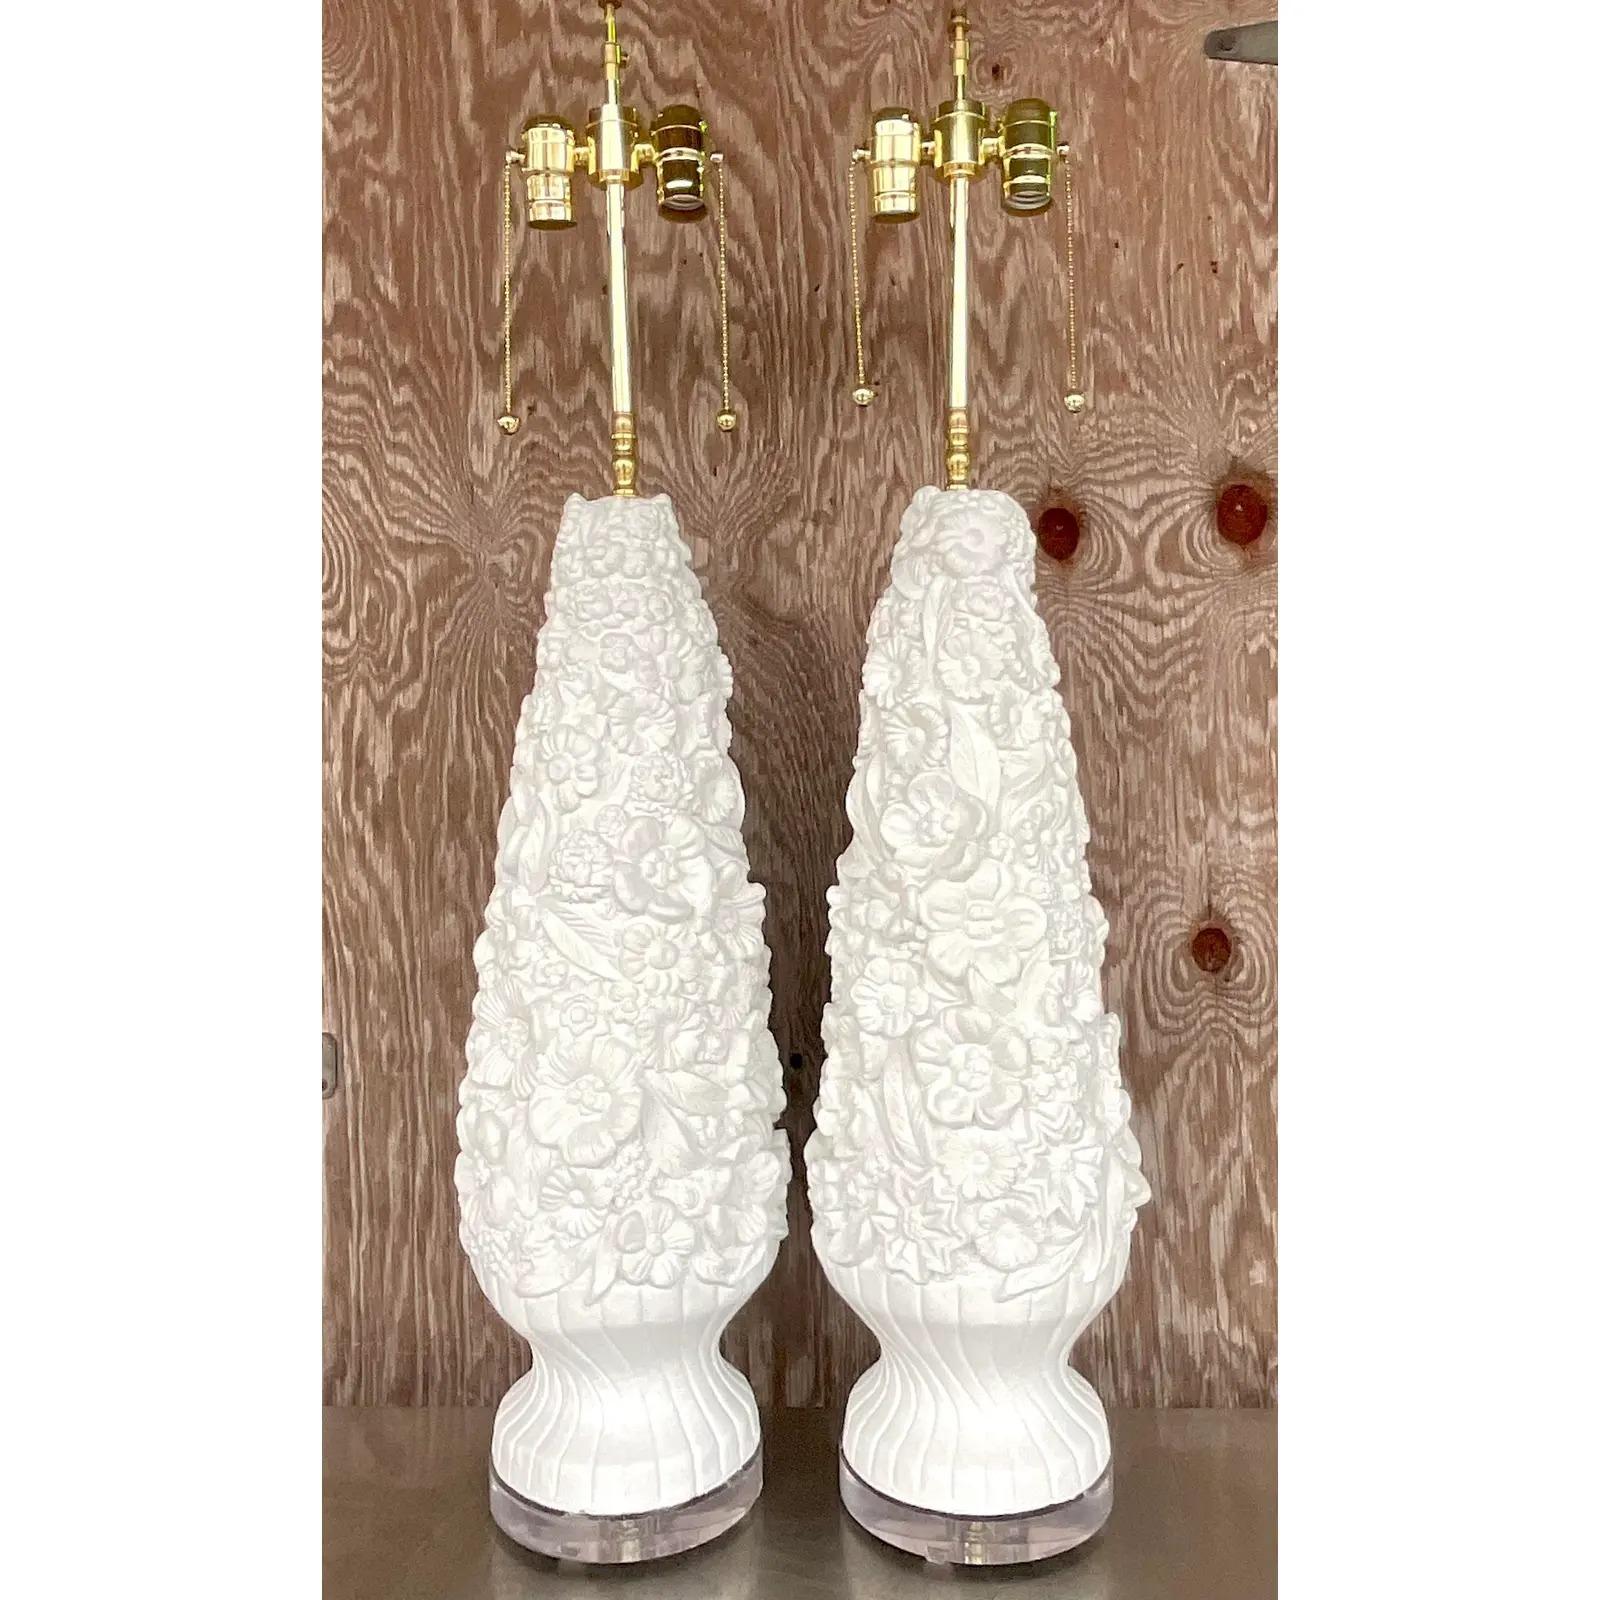 Une fantastique paire de lampes de table Vintage By. Un magnifique motif floral sculpté. Entièrement restauré avec des pièces de quincaillerie, des câbles et des socles en lucite neufs. Acquis d'une propriété de Palm Beach.